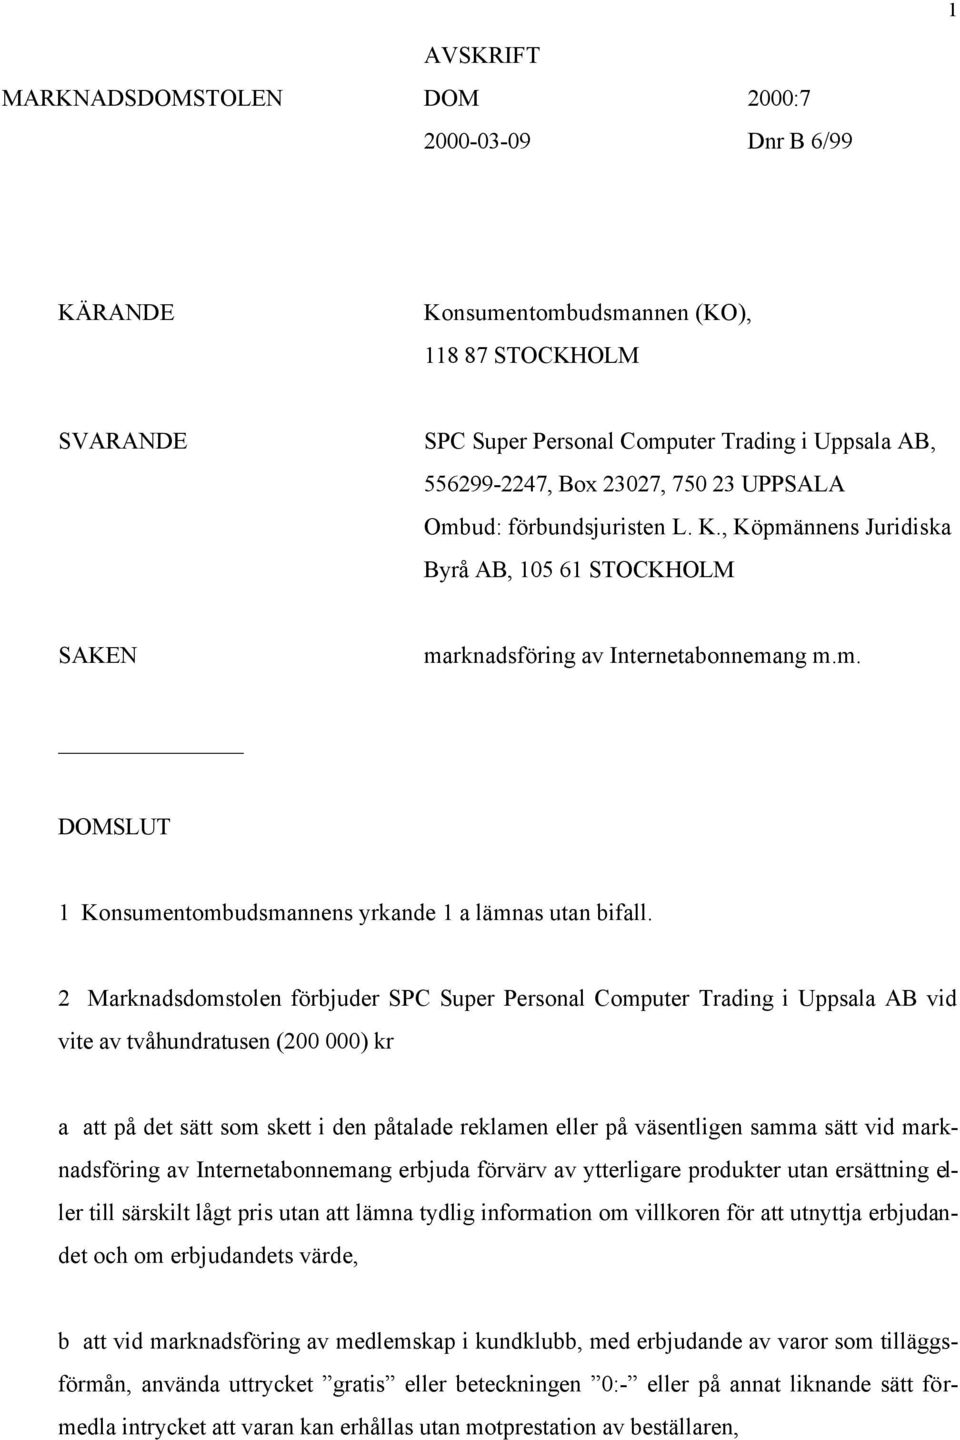 2 Marknadsdomstolen förbjuder SPC Super Personal Computer Trading i Uppsala AB vid vite av tvåhundratusen (200 000) kr a att på det sätt som skett i den påtalade reklamen eller på väsentligen samma